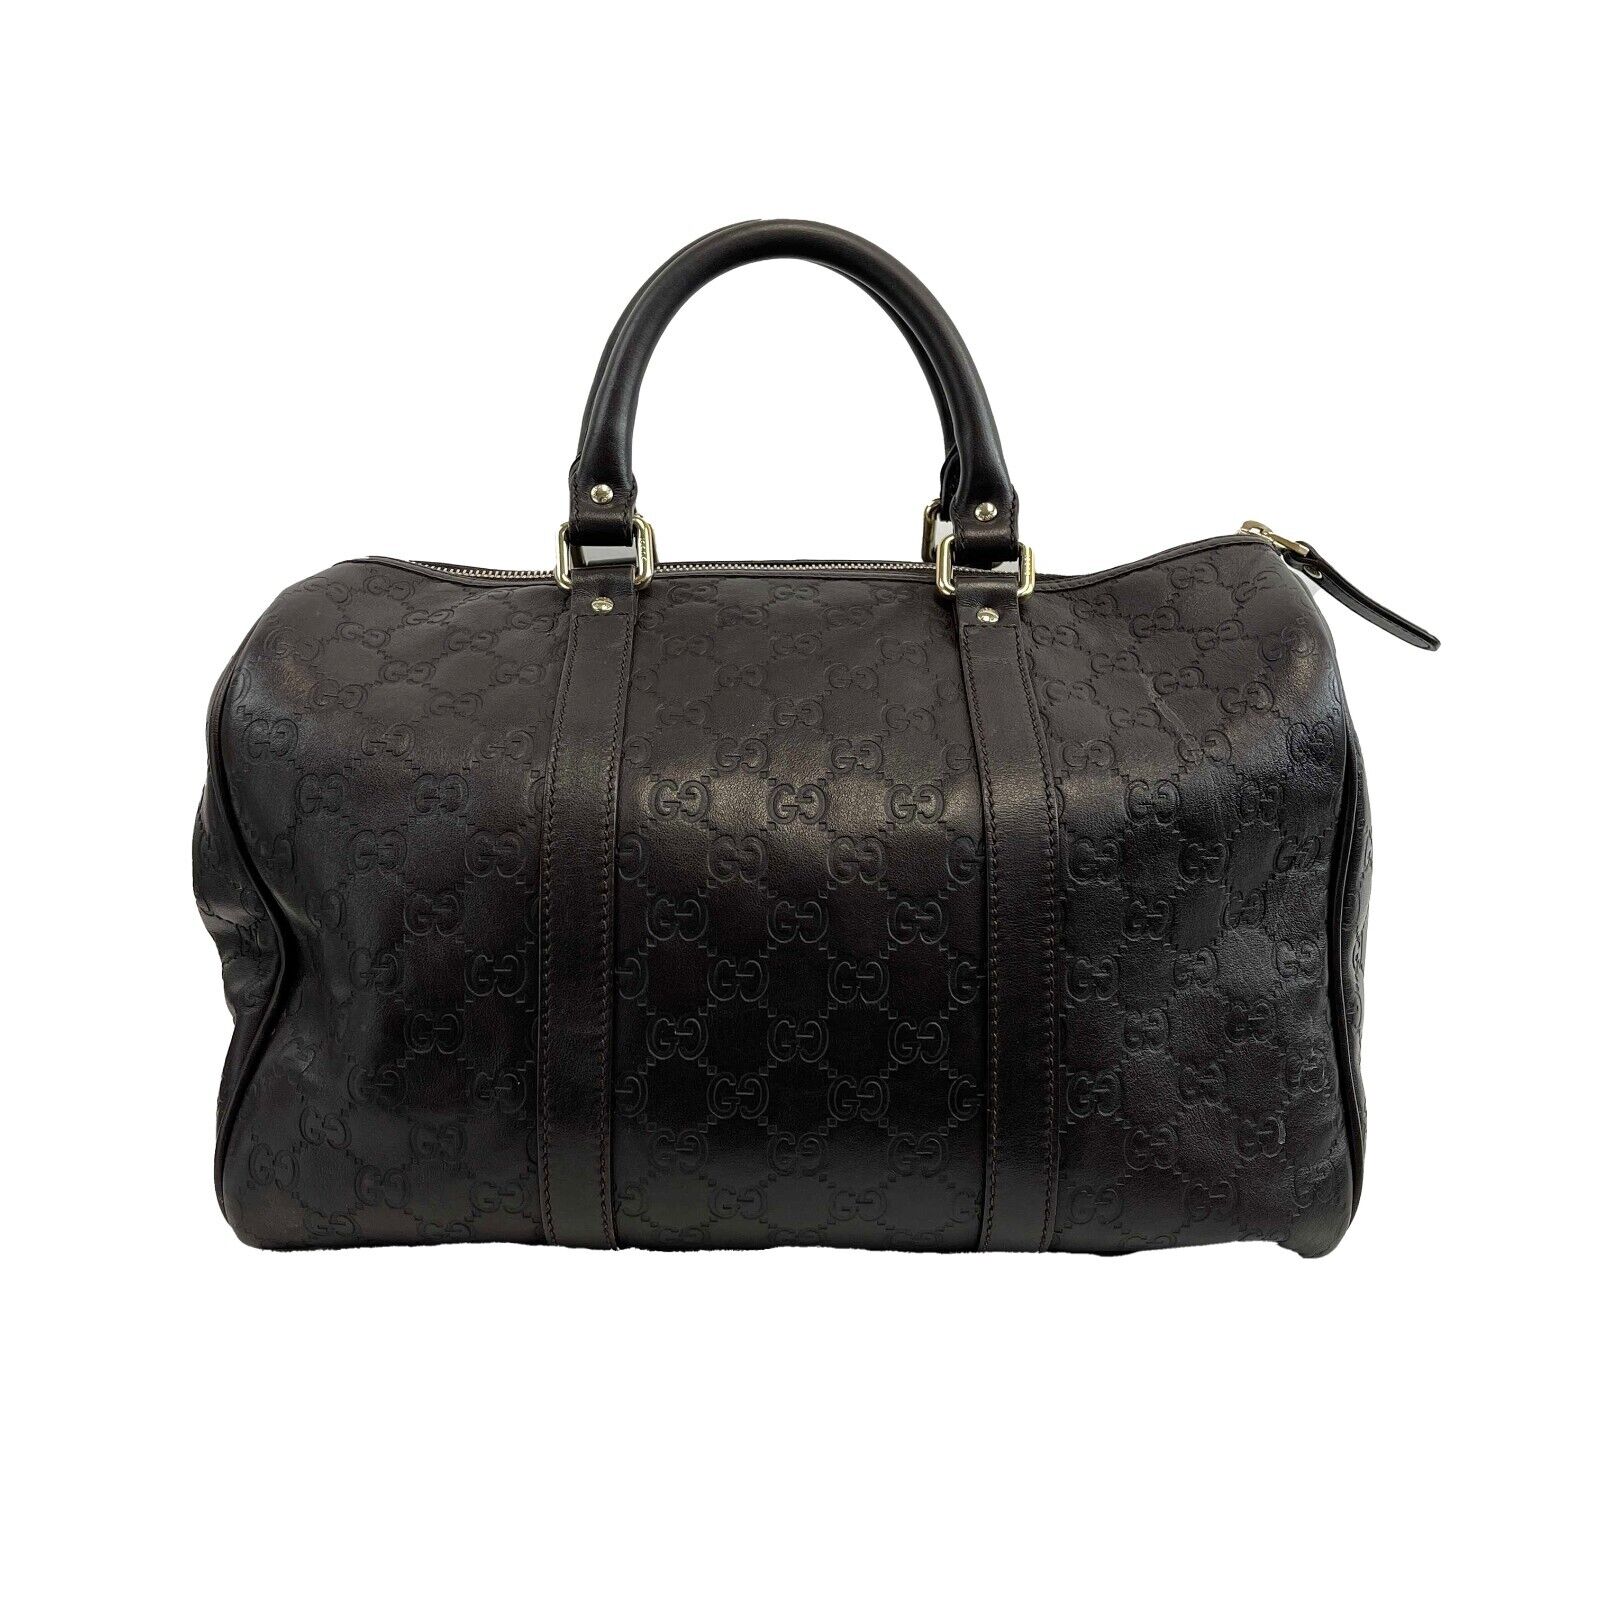 JIL SANDER - Croc-embossed leather shoulder bag | Selfridges.com